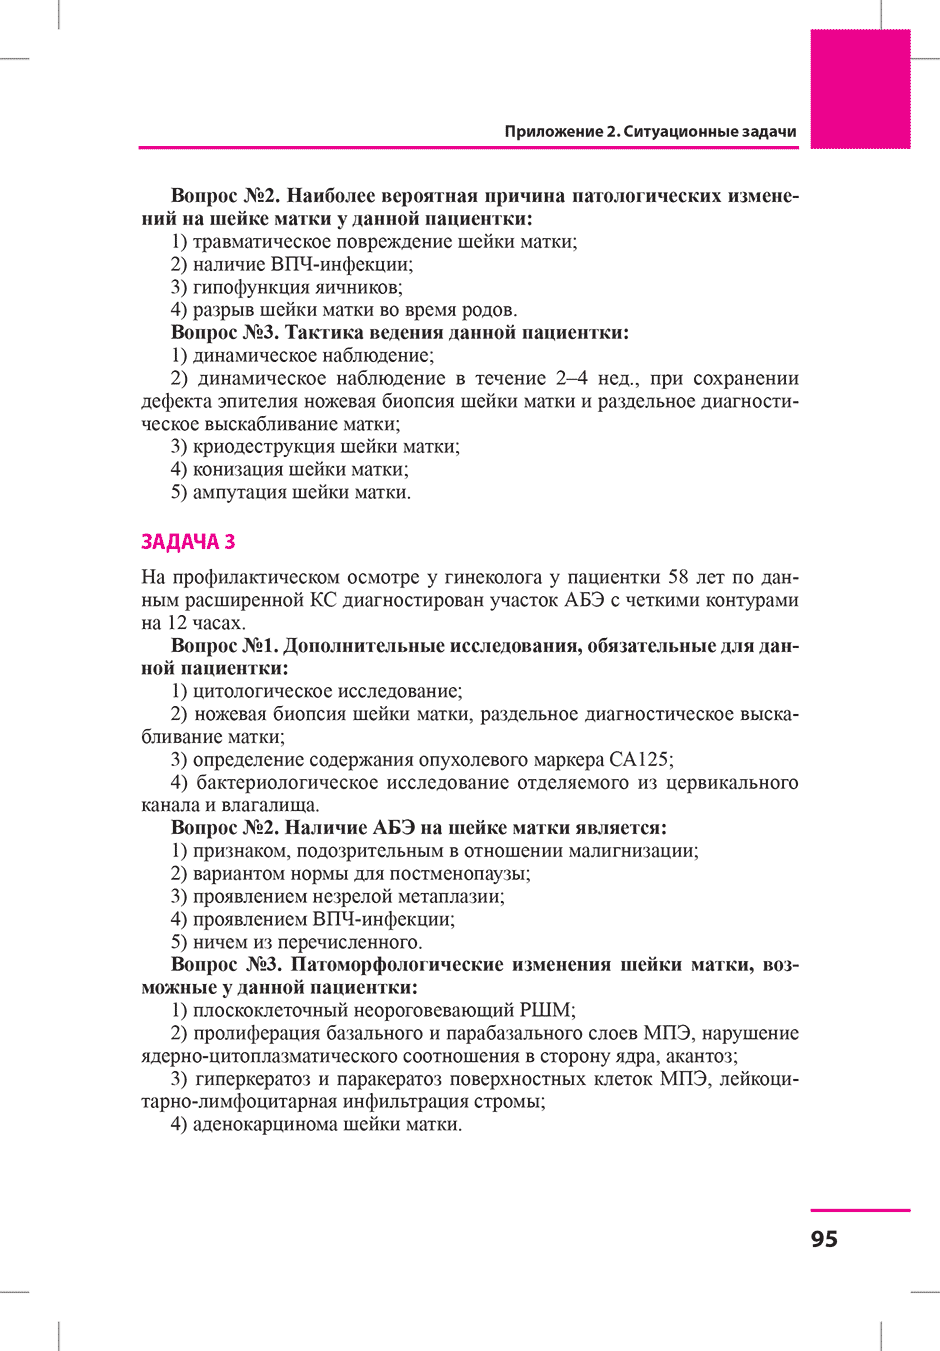 Пример страницы из книги "Заболевания шейки матки. Современные подходы к диагностике и лечению" - Овсянникова Т. В.